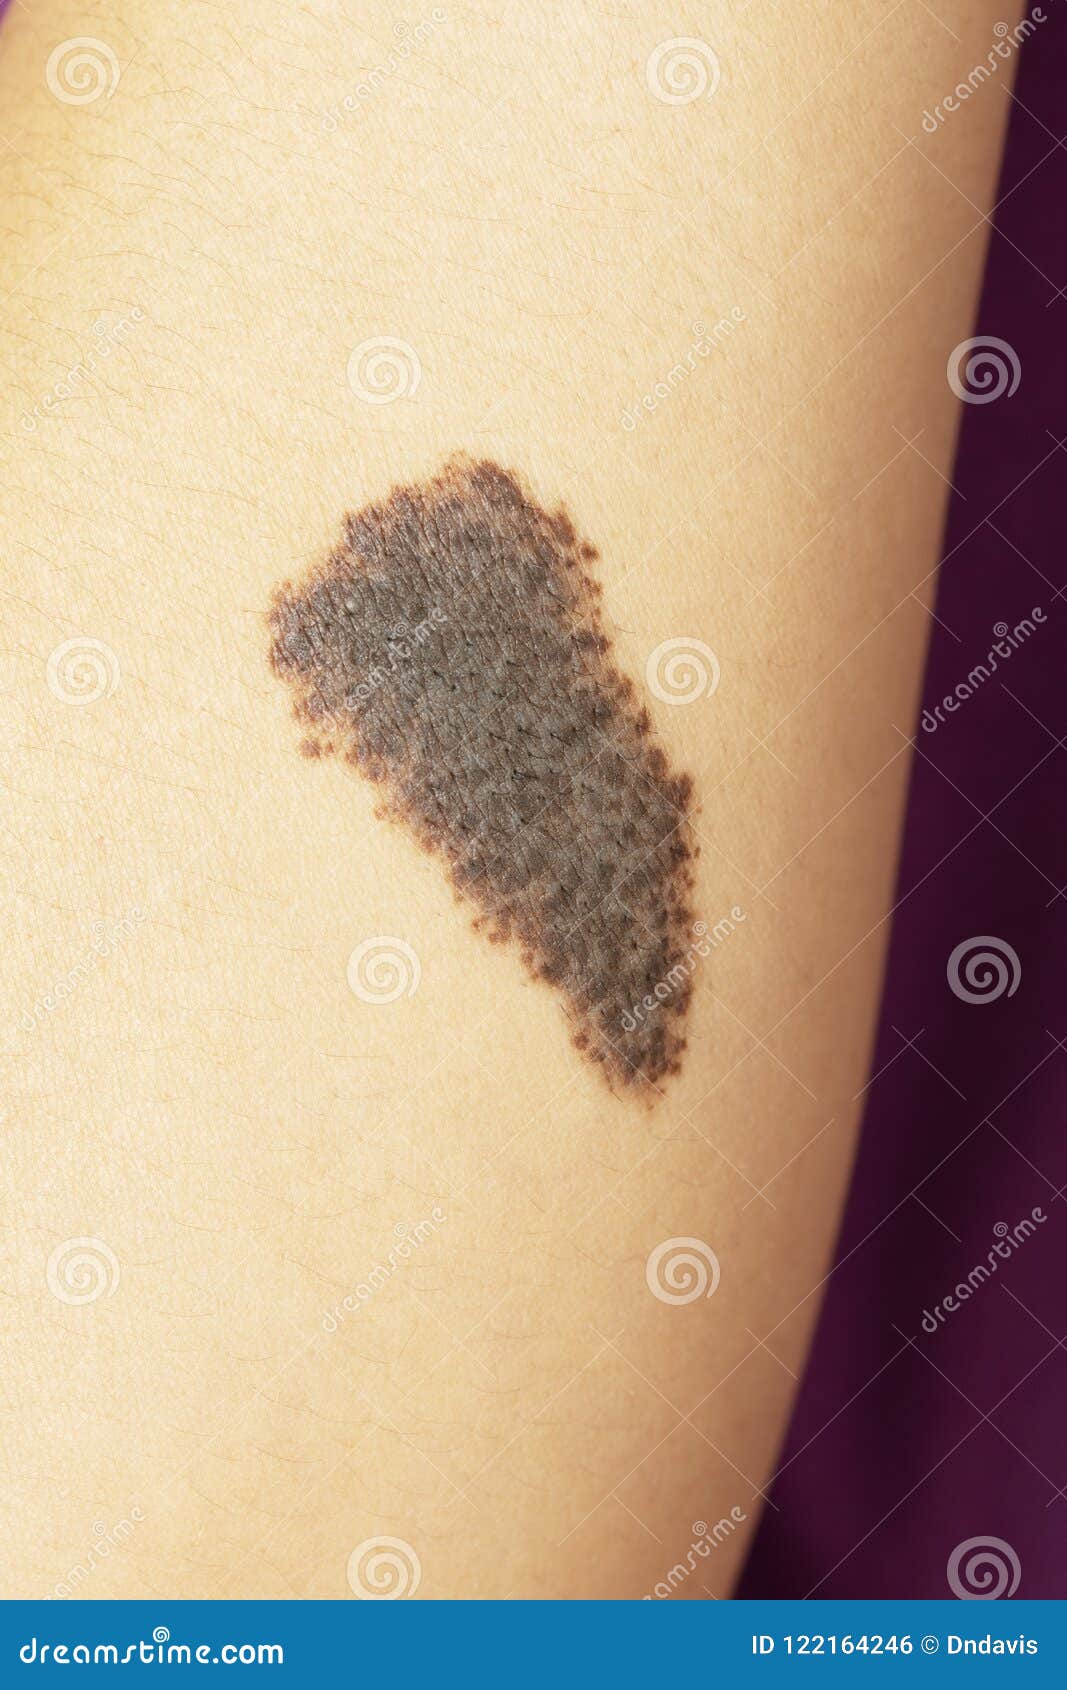 congenital melanocytic naevi birthmark on a woman`s arm